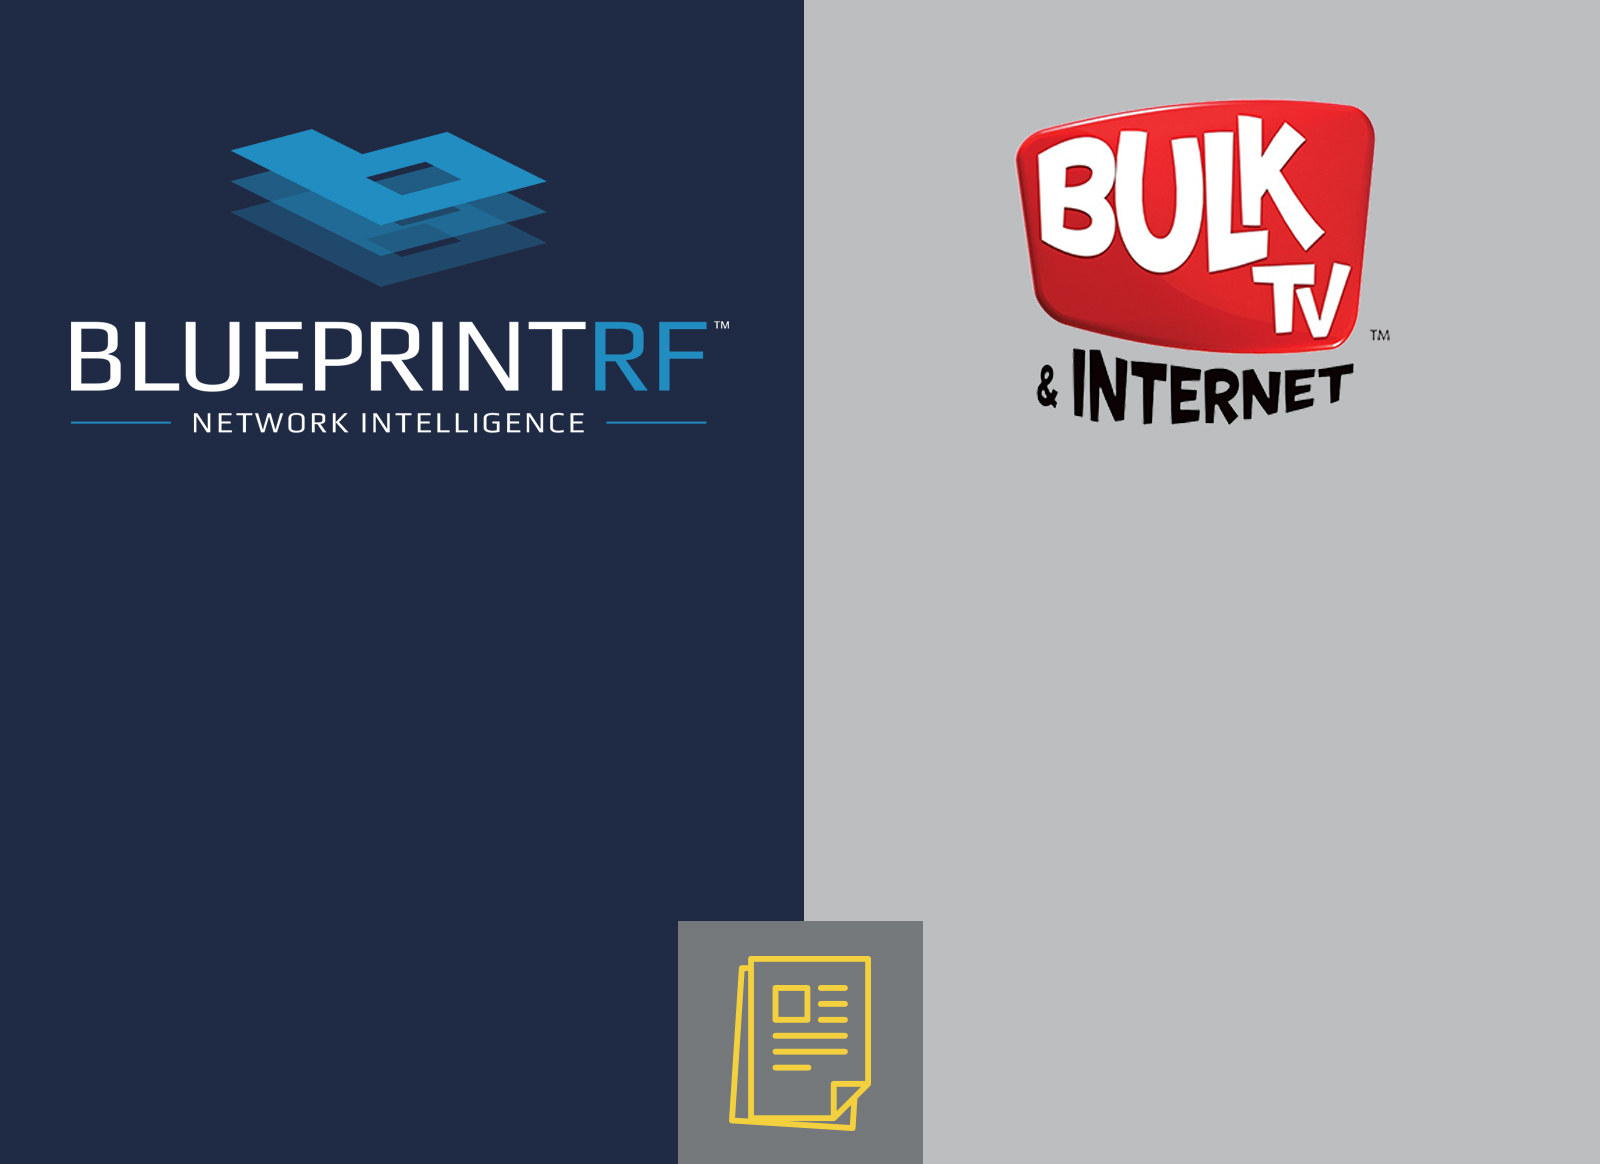 Blueprint RF, Bulk TV News